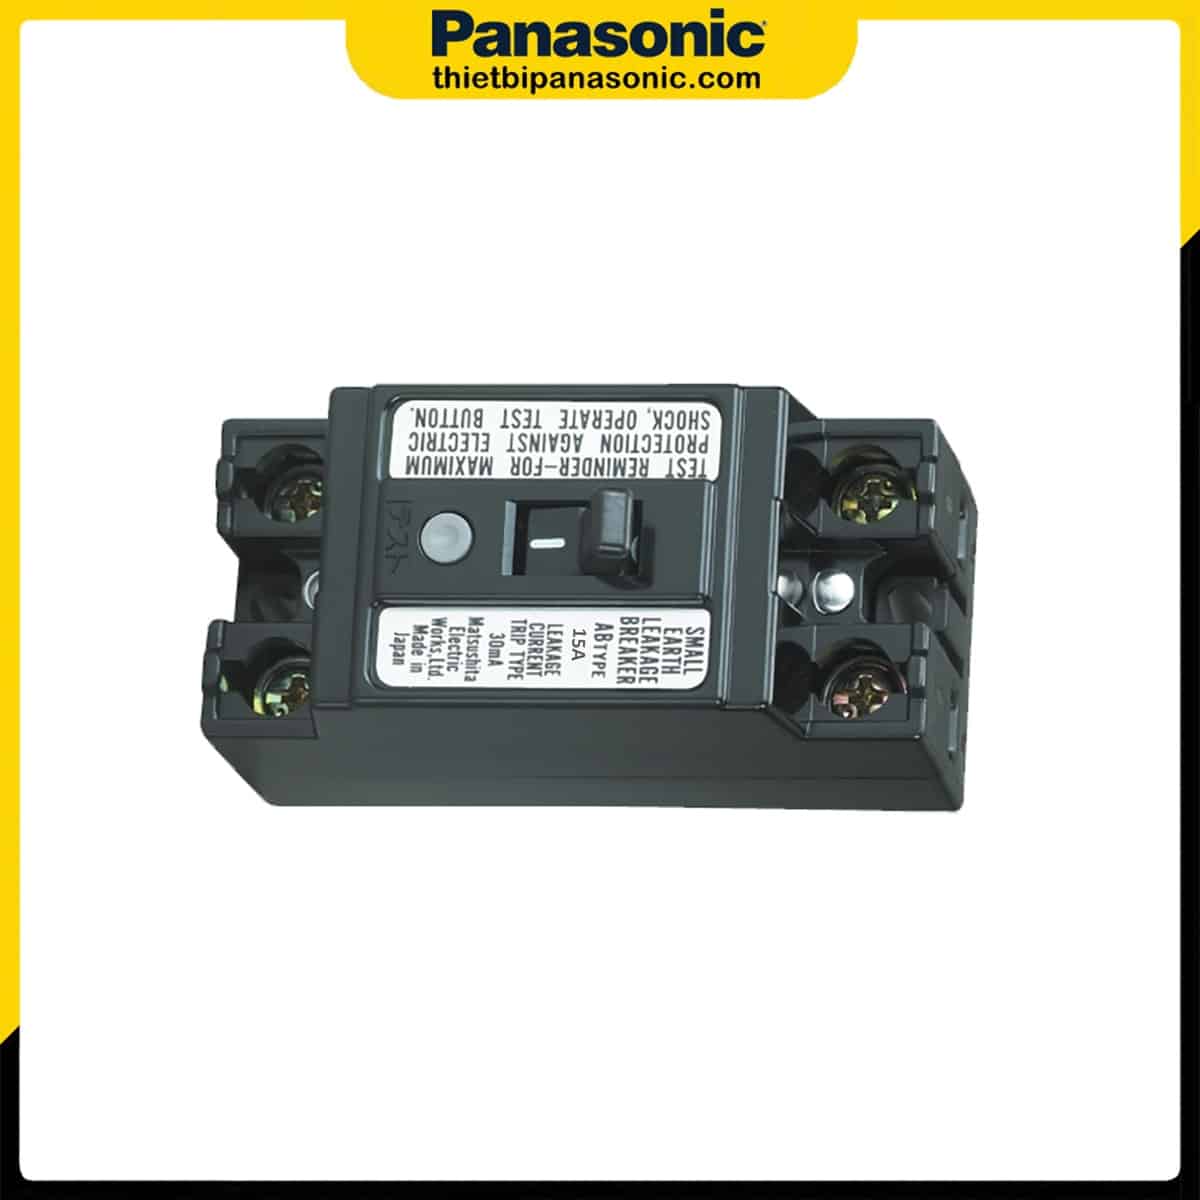 ELB Panasonic BJS1532S1V 15A 1.5kA 30mA là sản phẩm đáng tin cậy để bảo vệ hệ thống điện của mọi công trình.